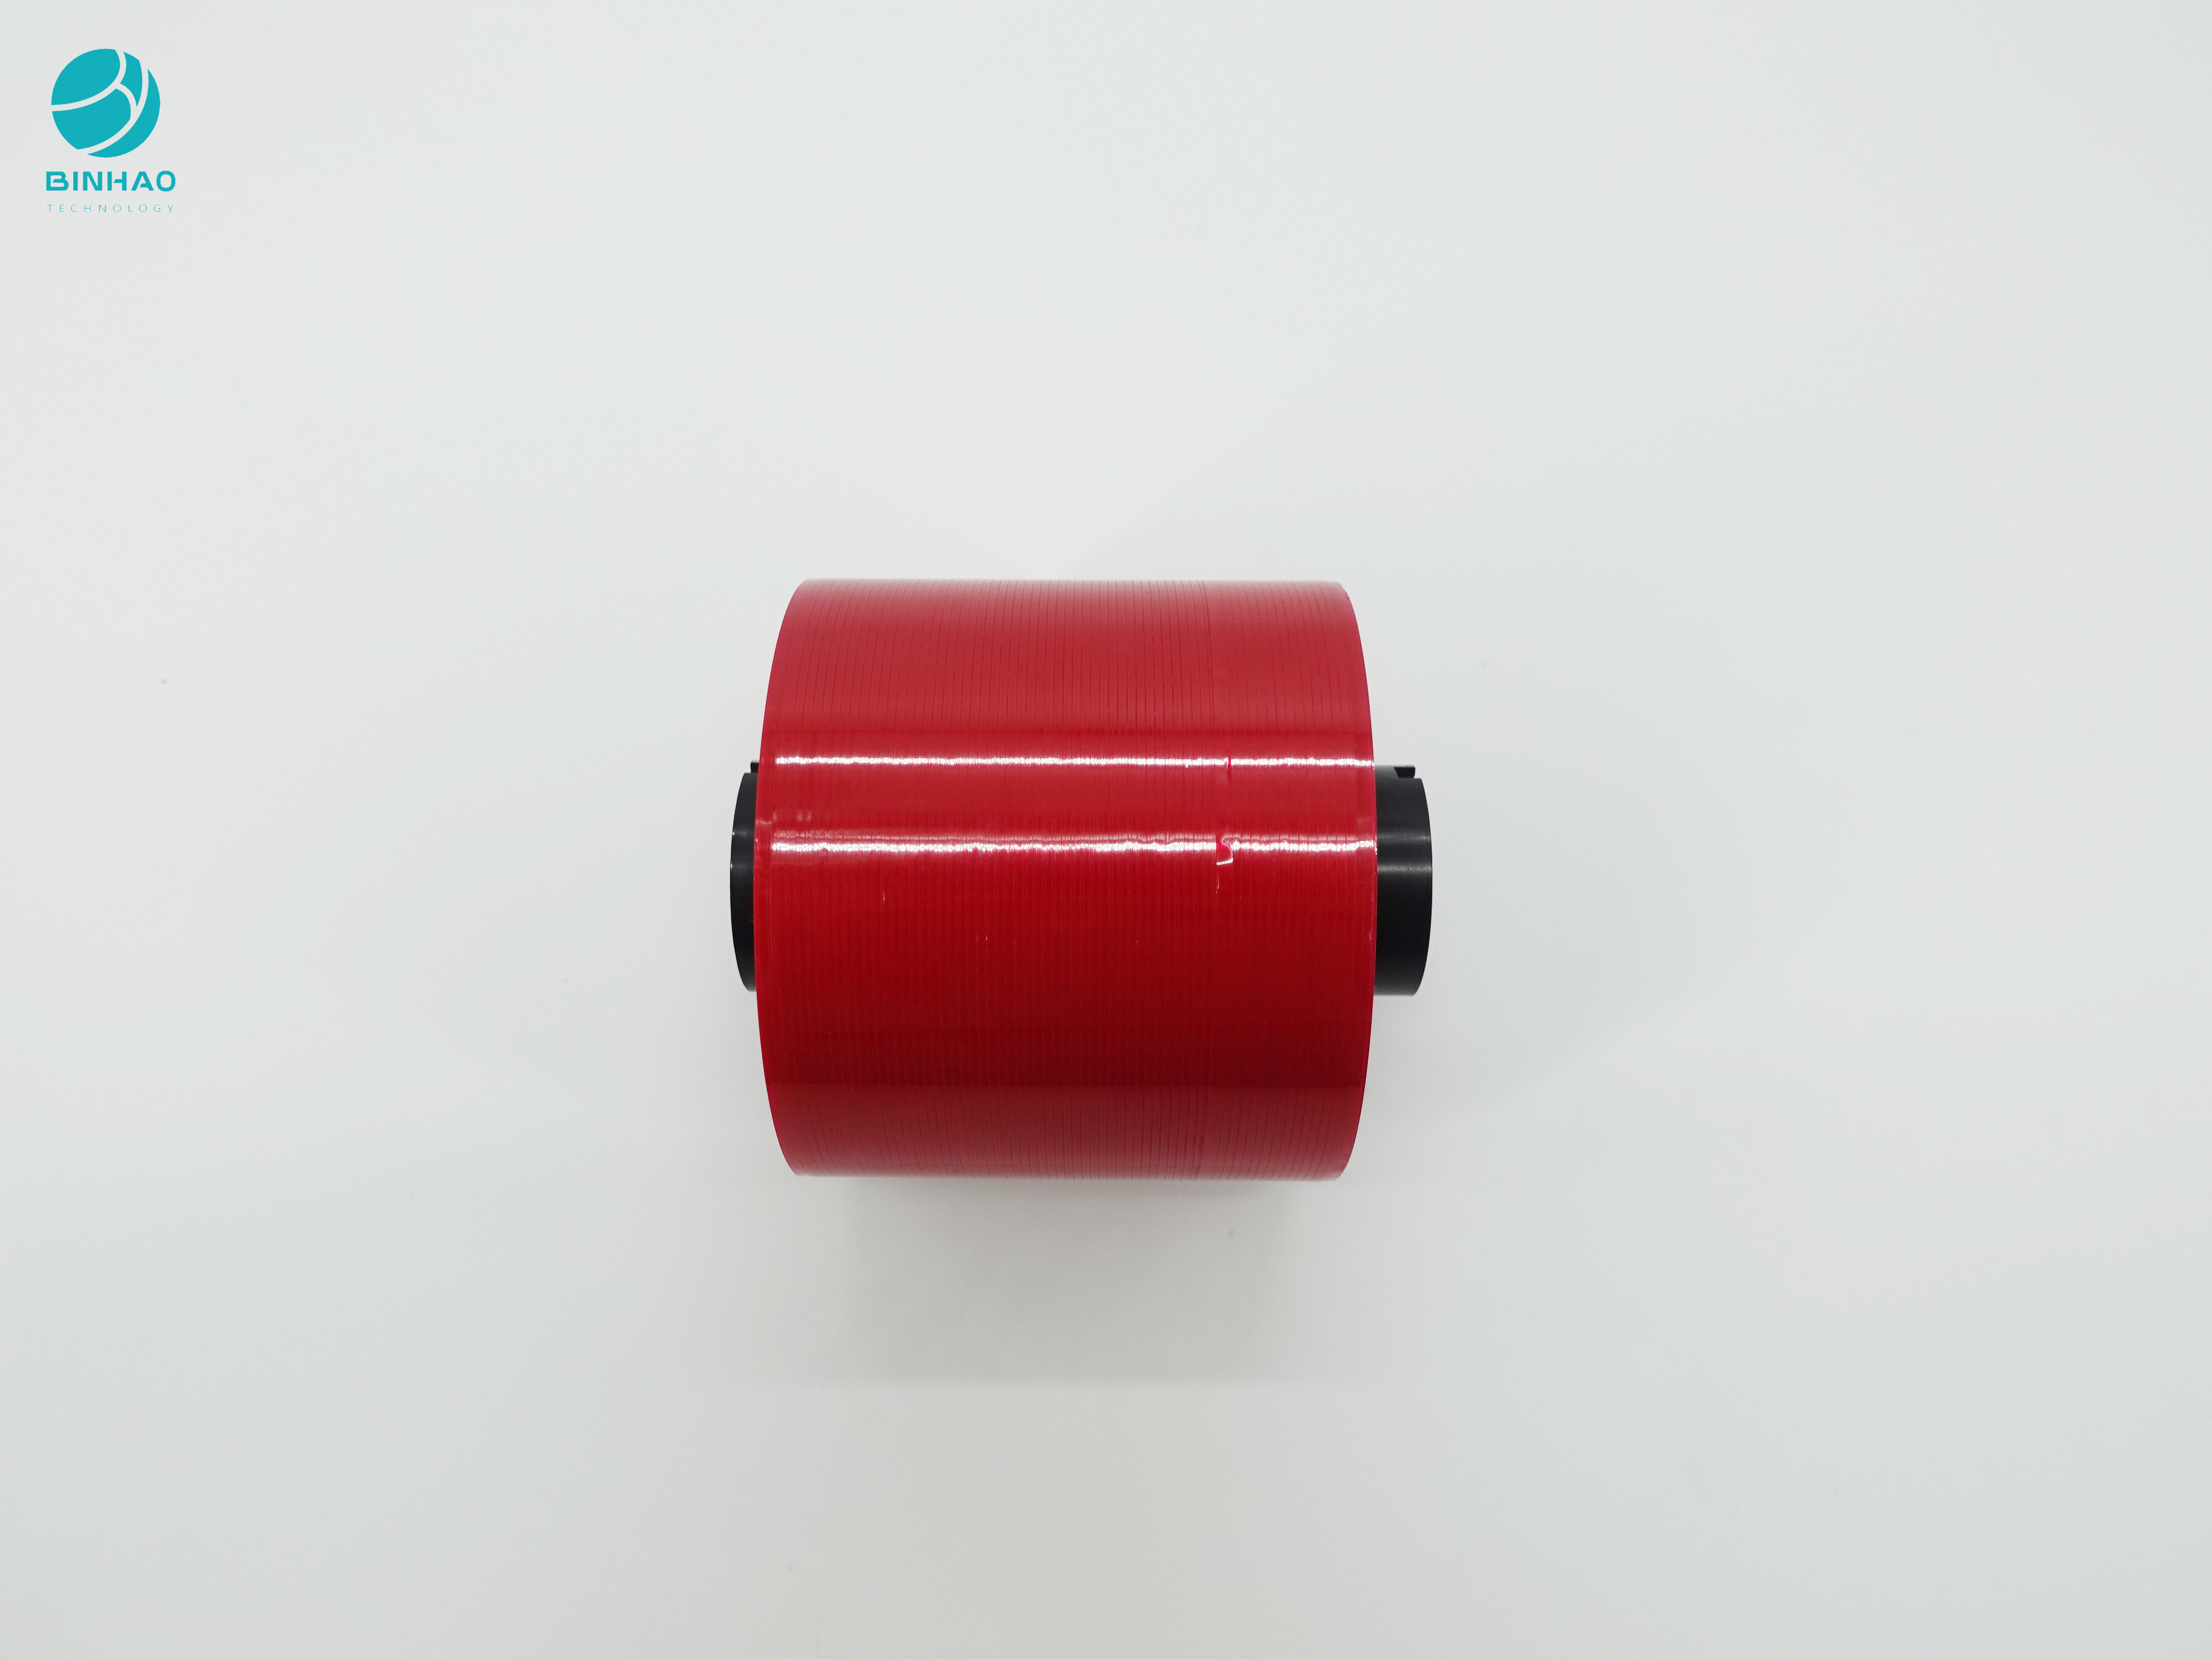 escuro feito sob encomenda de 4mm - fita enorme vermelha do rasgo de Rolls para o empacotamento dos produtos da caixa de FMCG